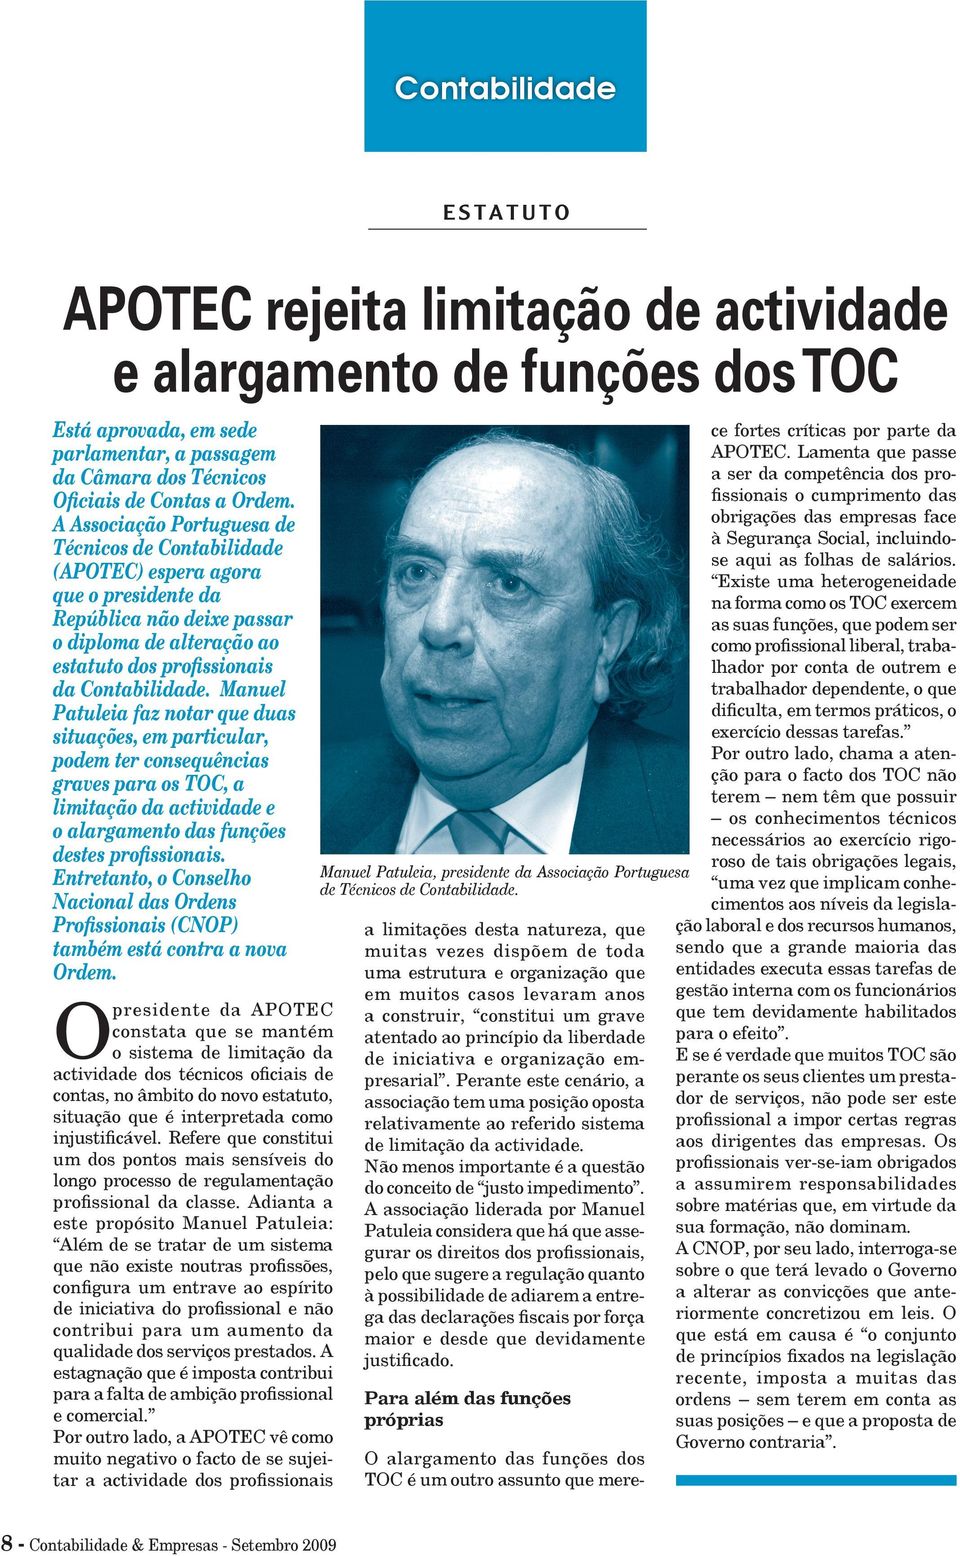 Manuel Patuleia faz notar que duas situações, em particular, podem ter consequências graves para os TOC, a limitação da actividade e o alargamento das funções destes profissionais.